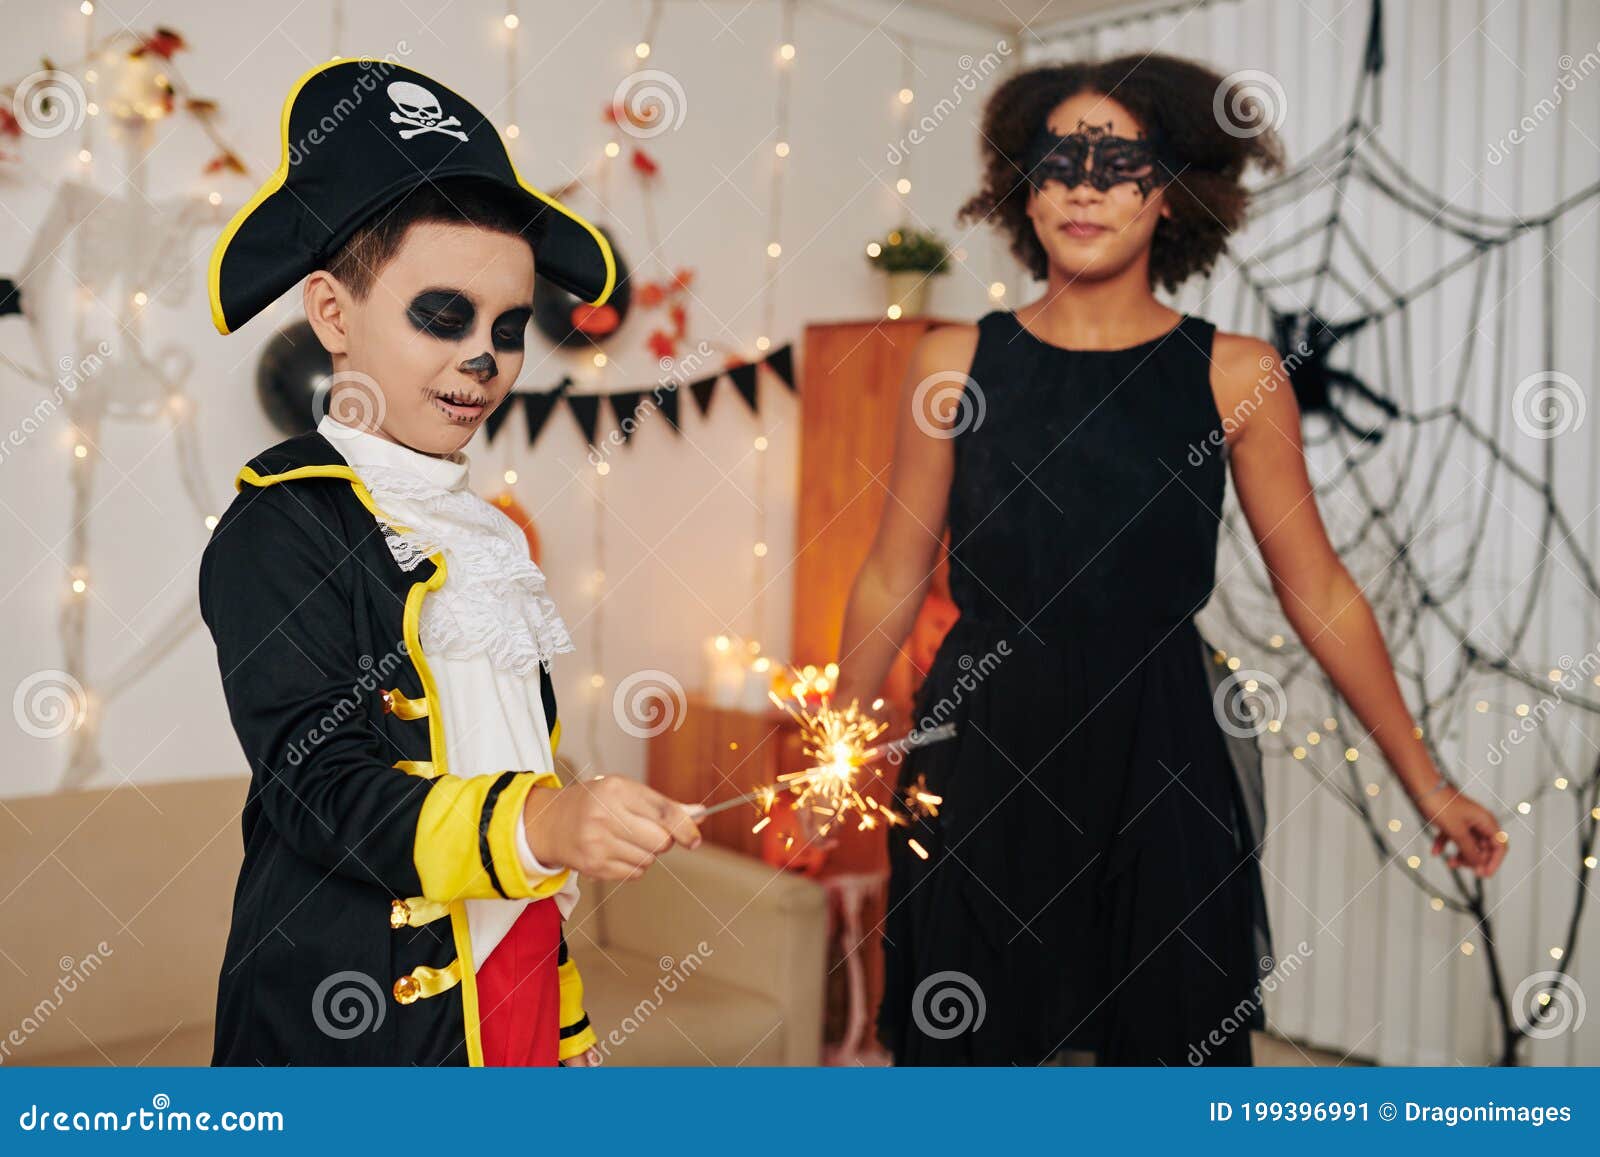 Menino Adolescente Na Fantasia De Pirata Imagem de Stock - Imagem